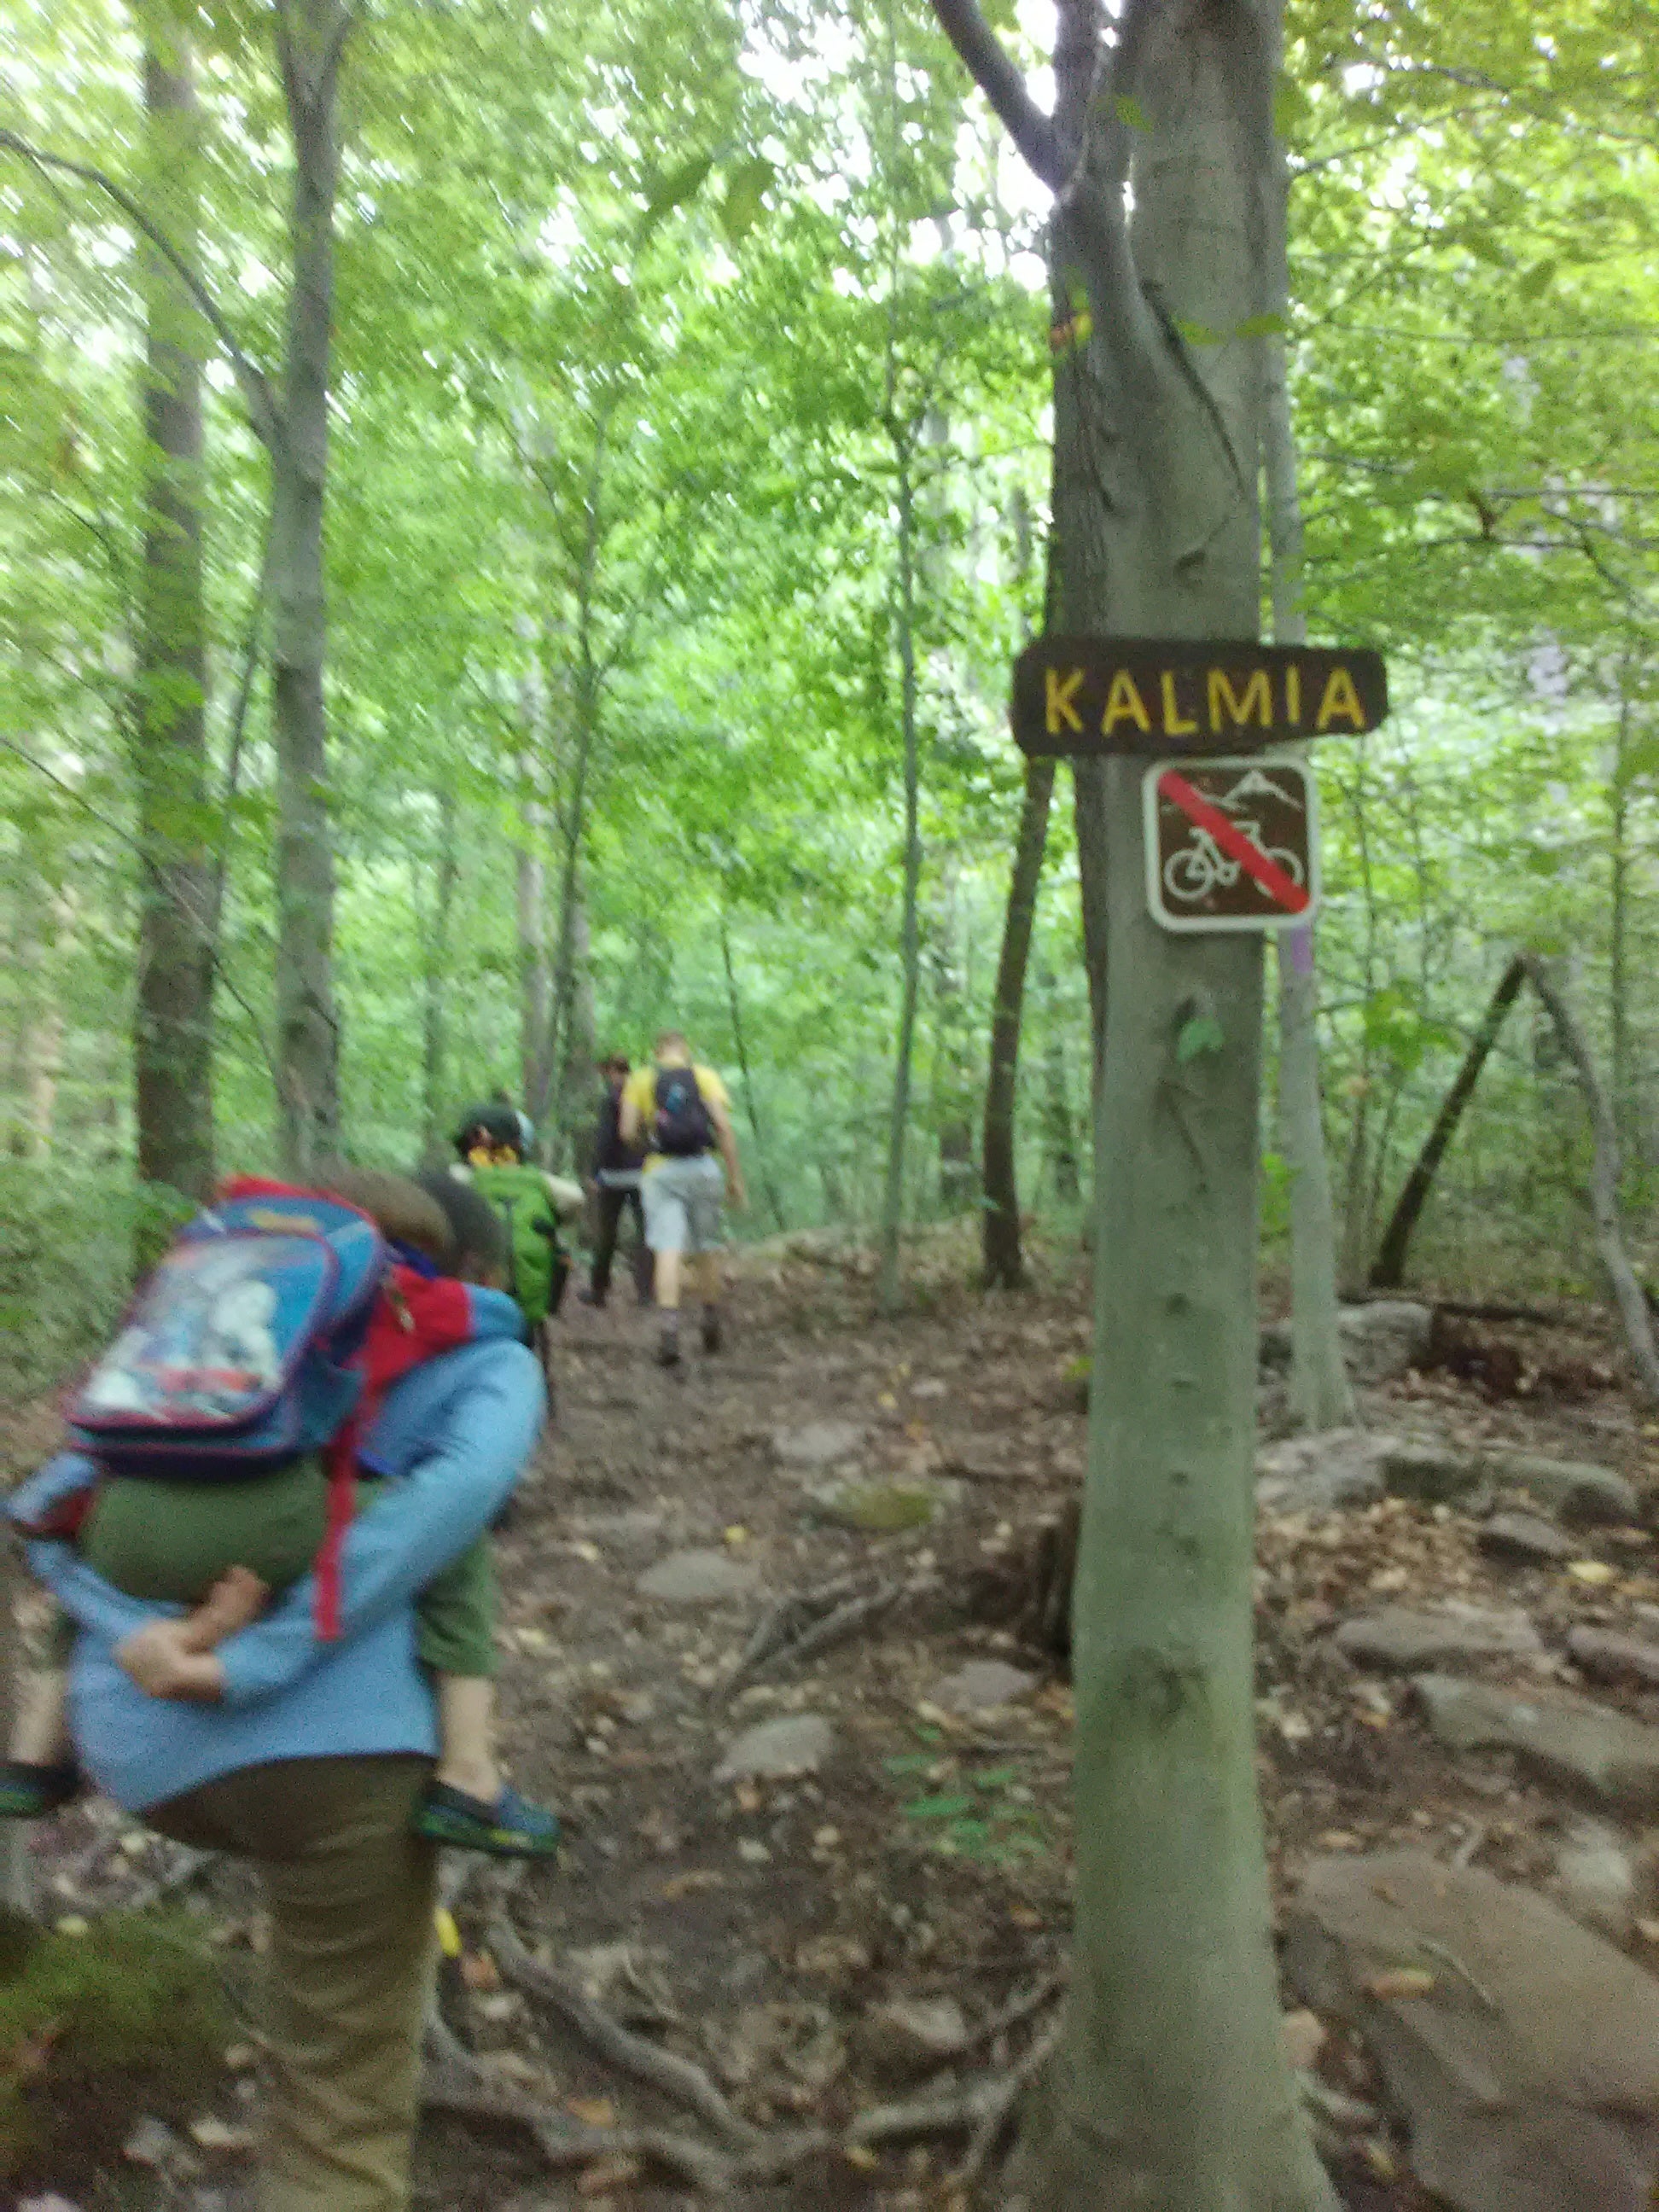 The Kalmia Trail